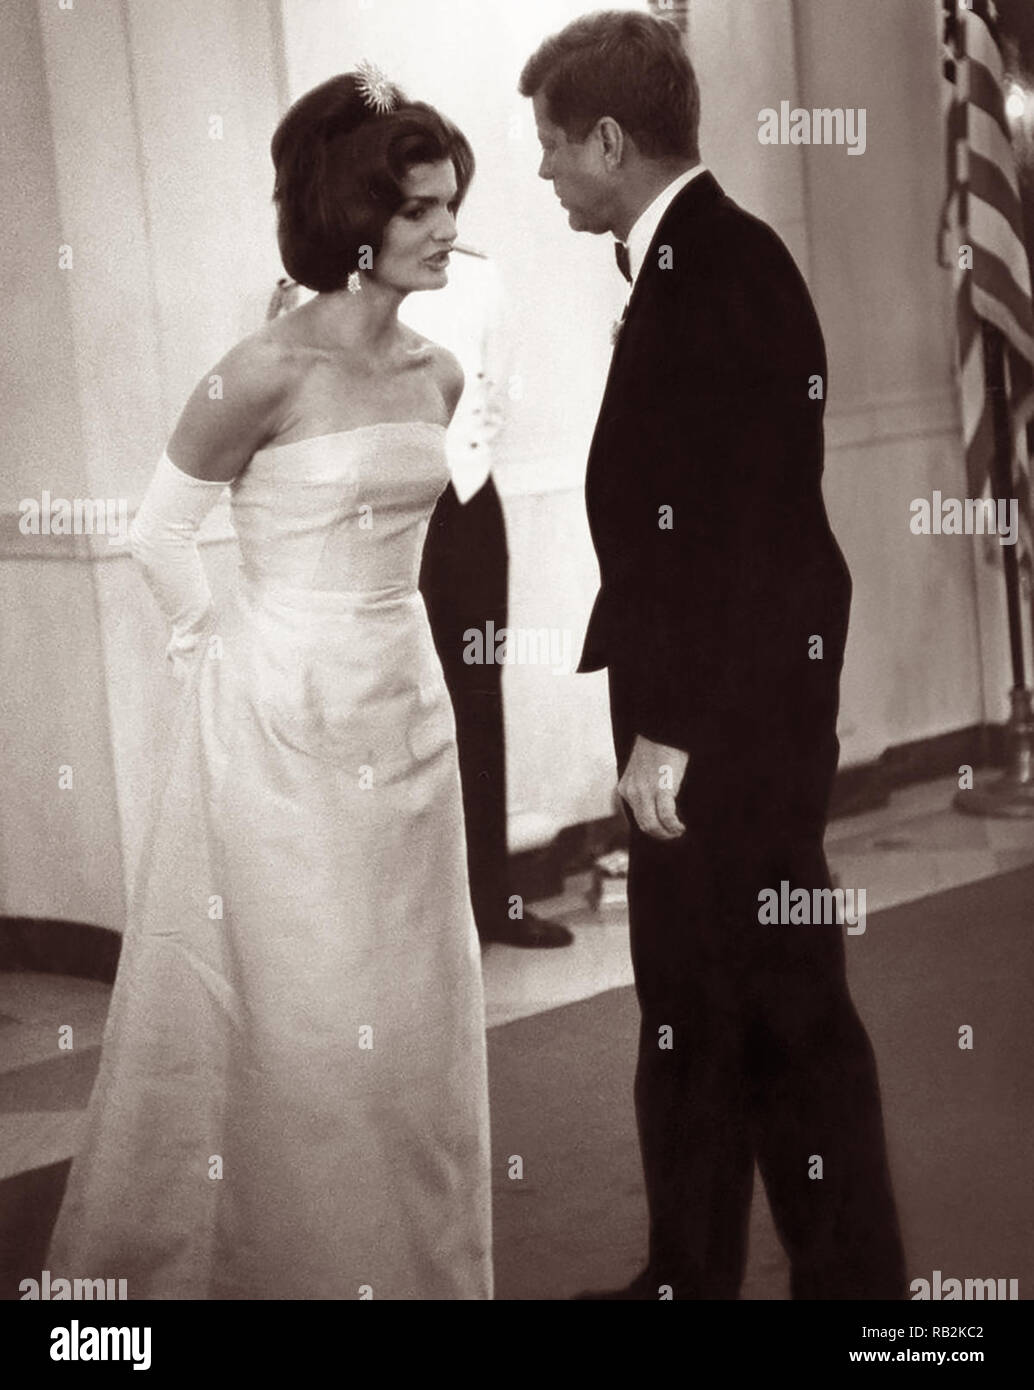 Präsidenten der Vereinigten Staaten John F. Kennedy und First Lady Jacqueline Kennedy bei einem Weißen Haus Abendessen zu Ehren von André Malraux, Staatsminister für Angelegenheiten der Kultur Frankreichs. Stockfoto